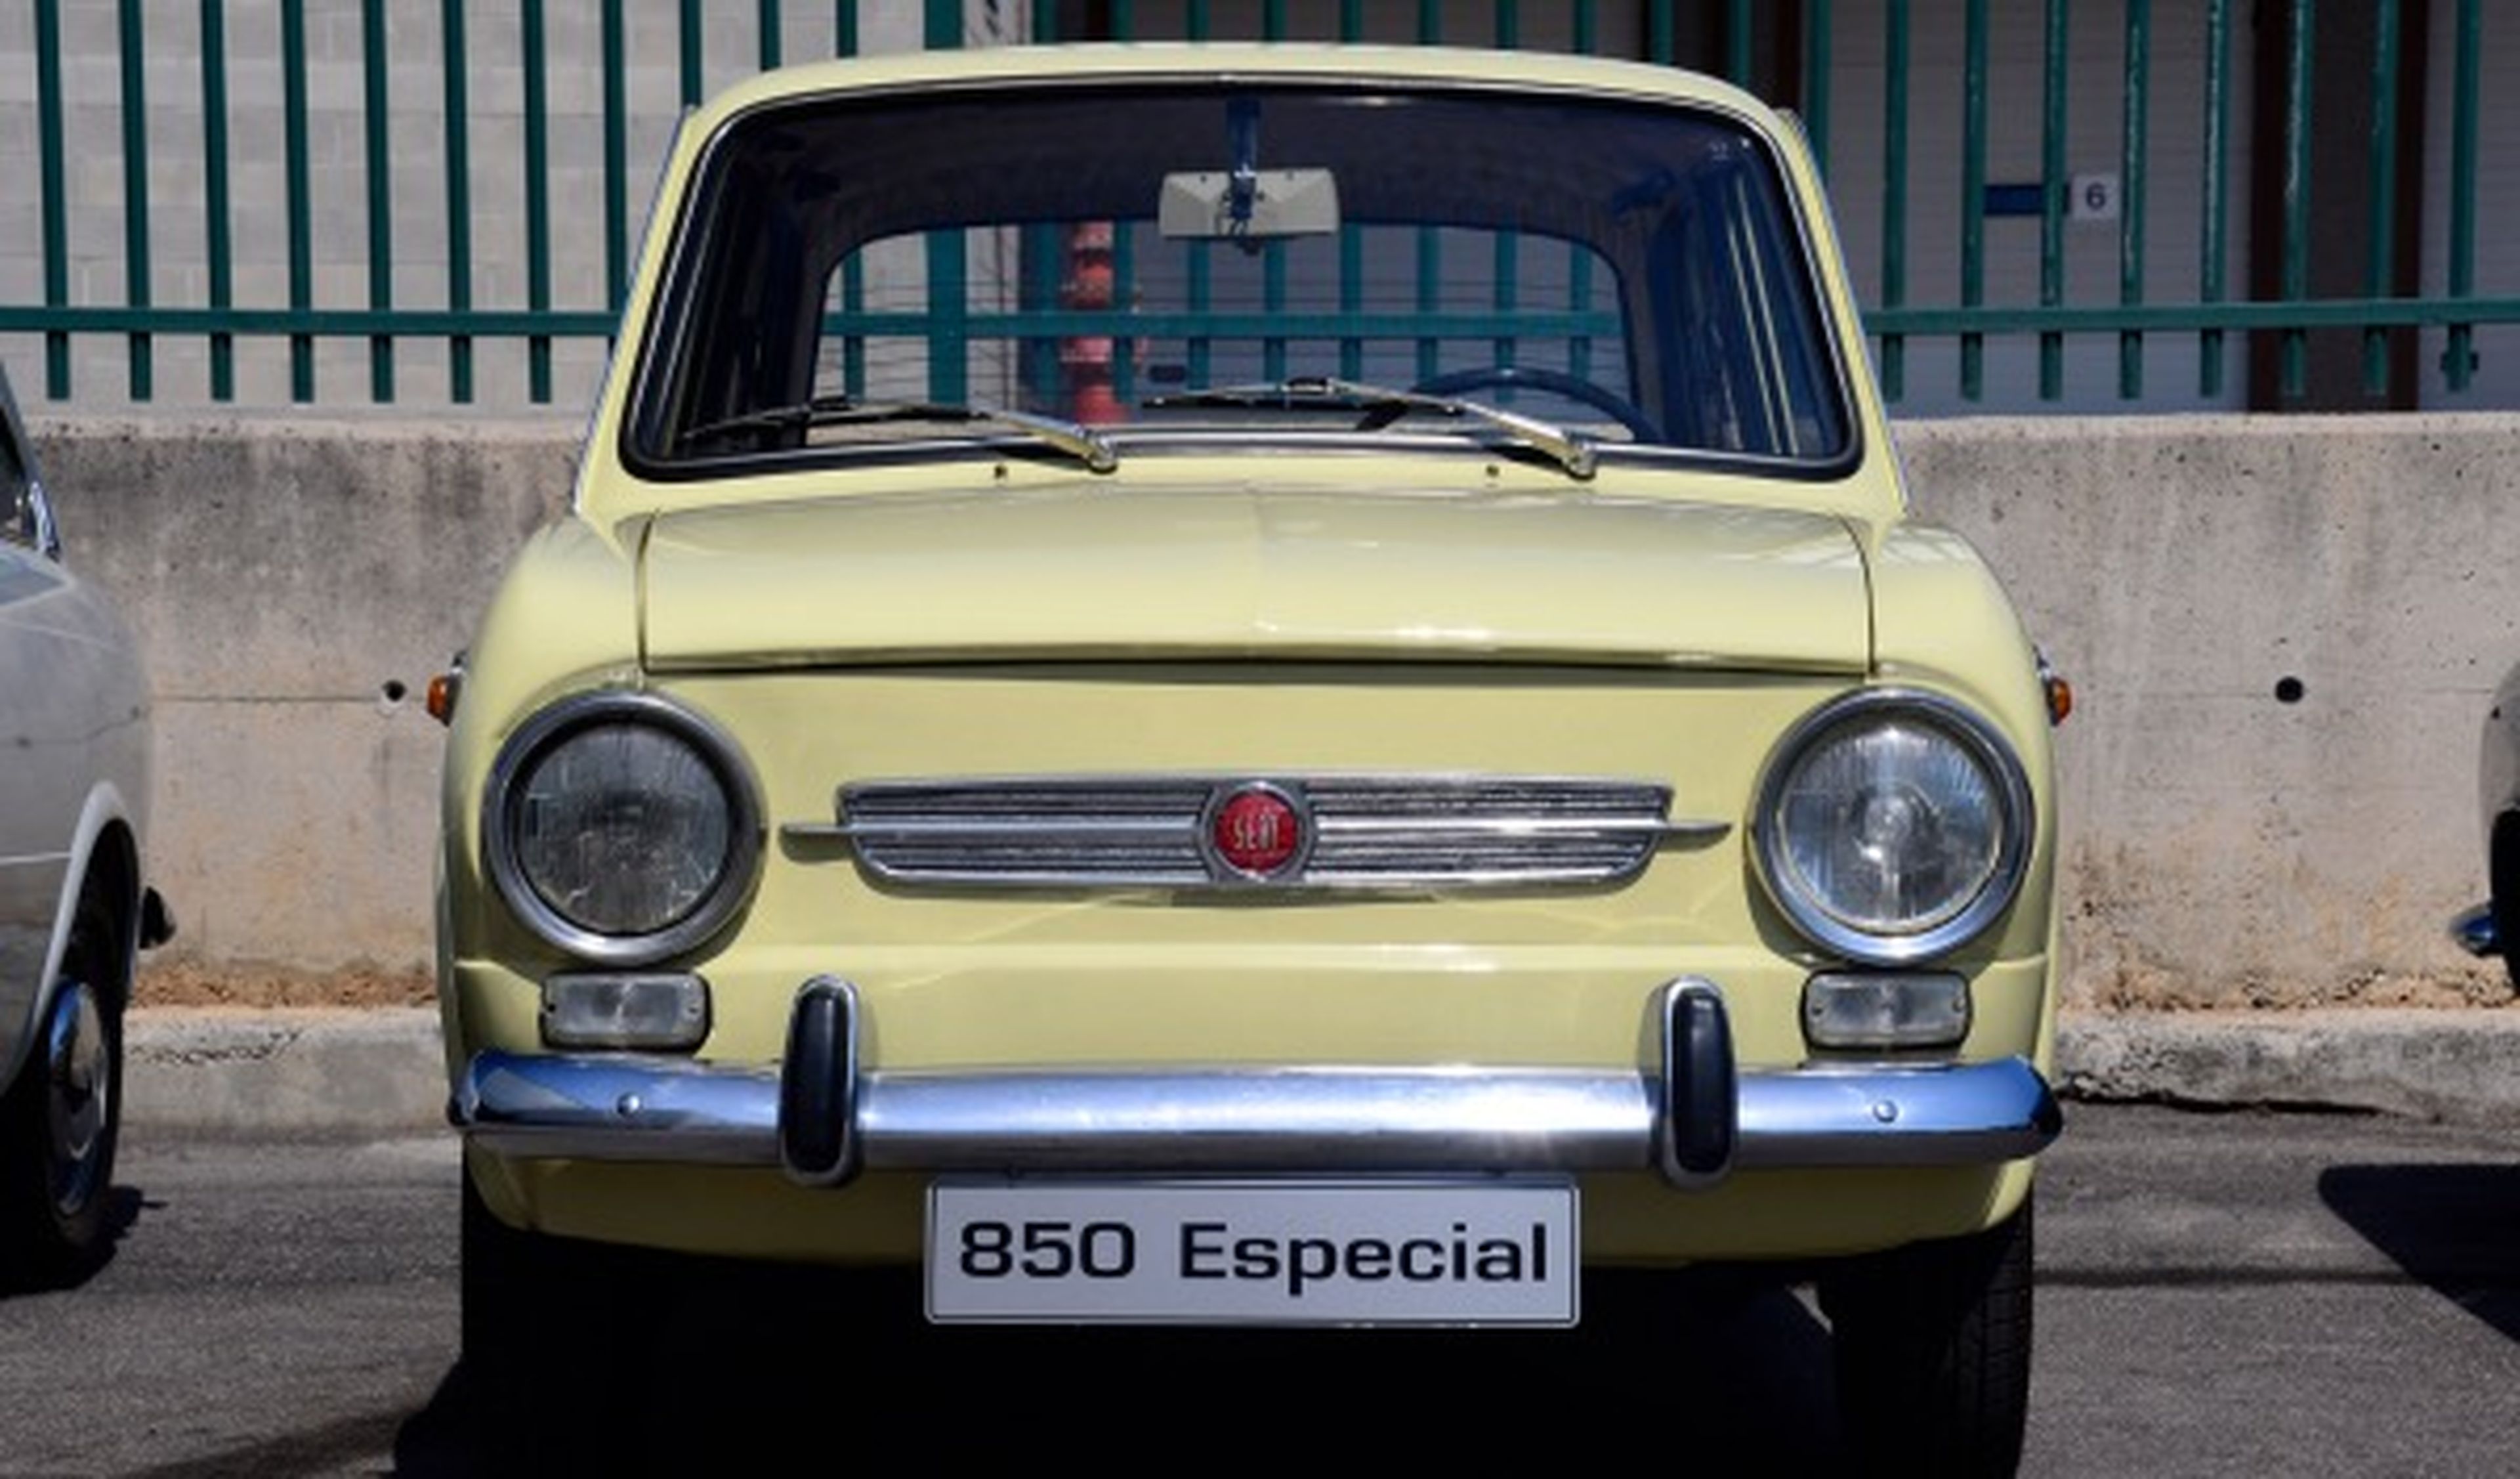 Prueba-Seat-850-Especial-Lujo